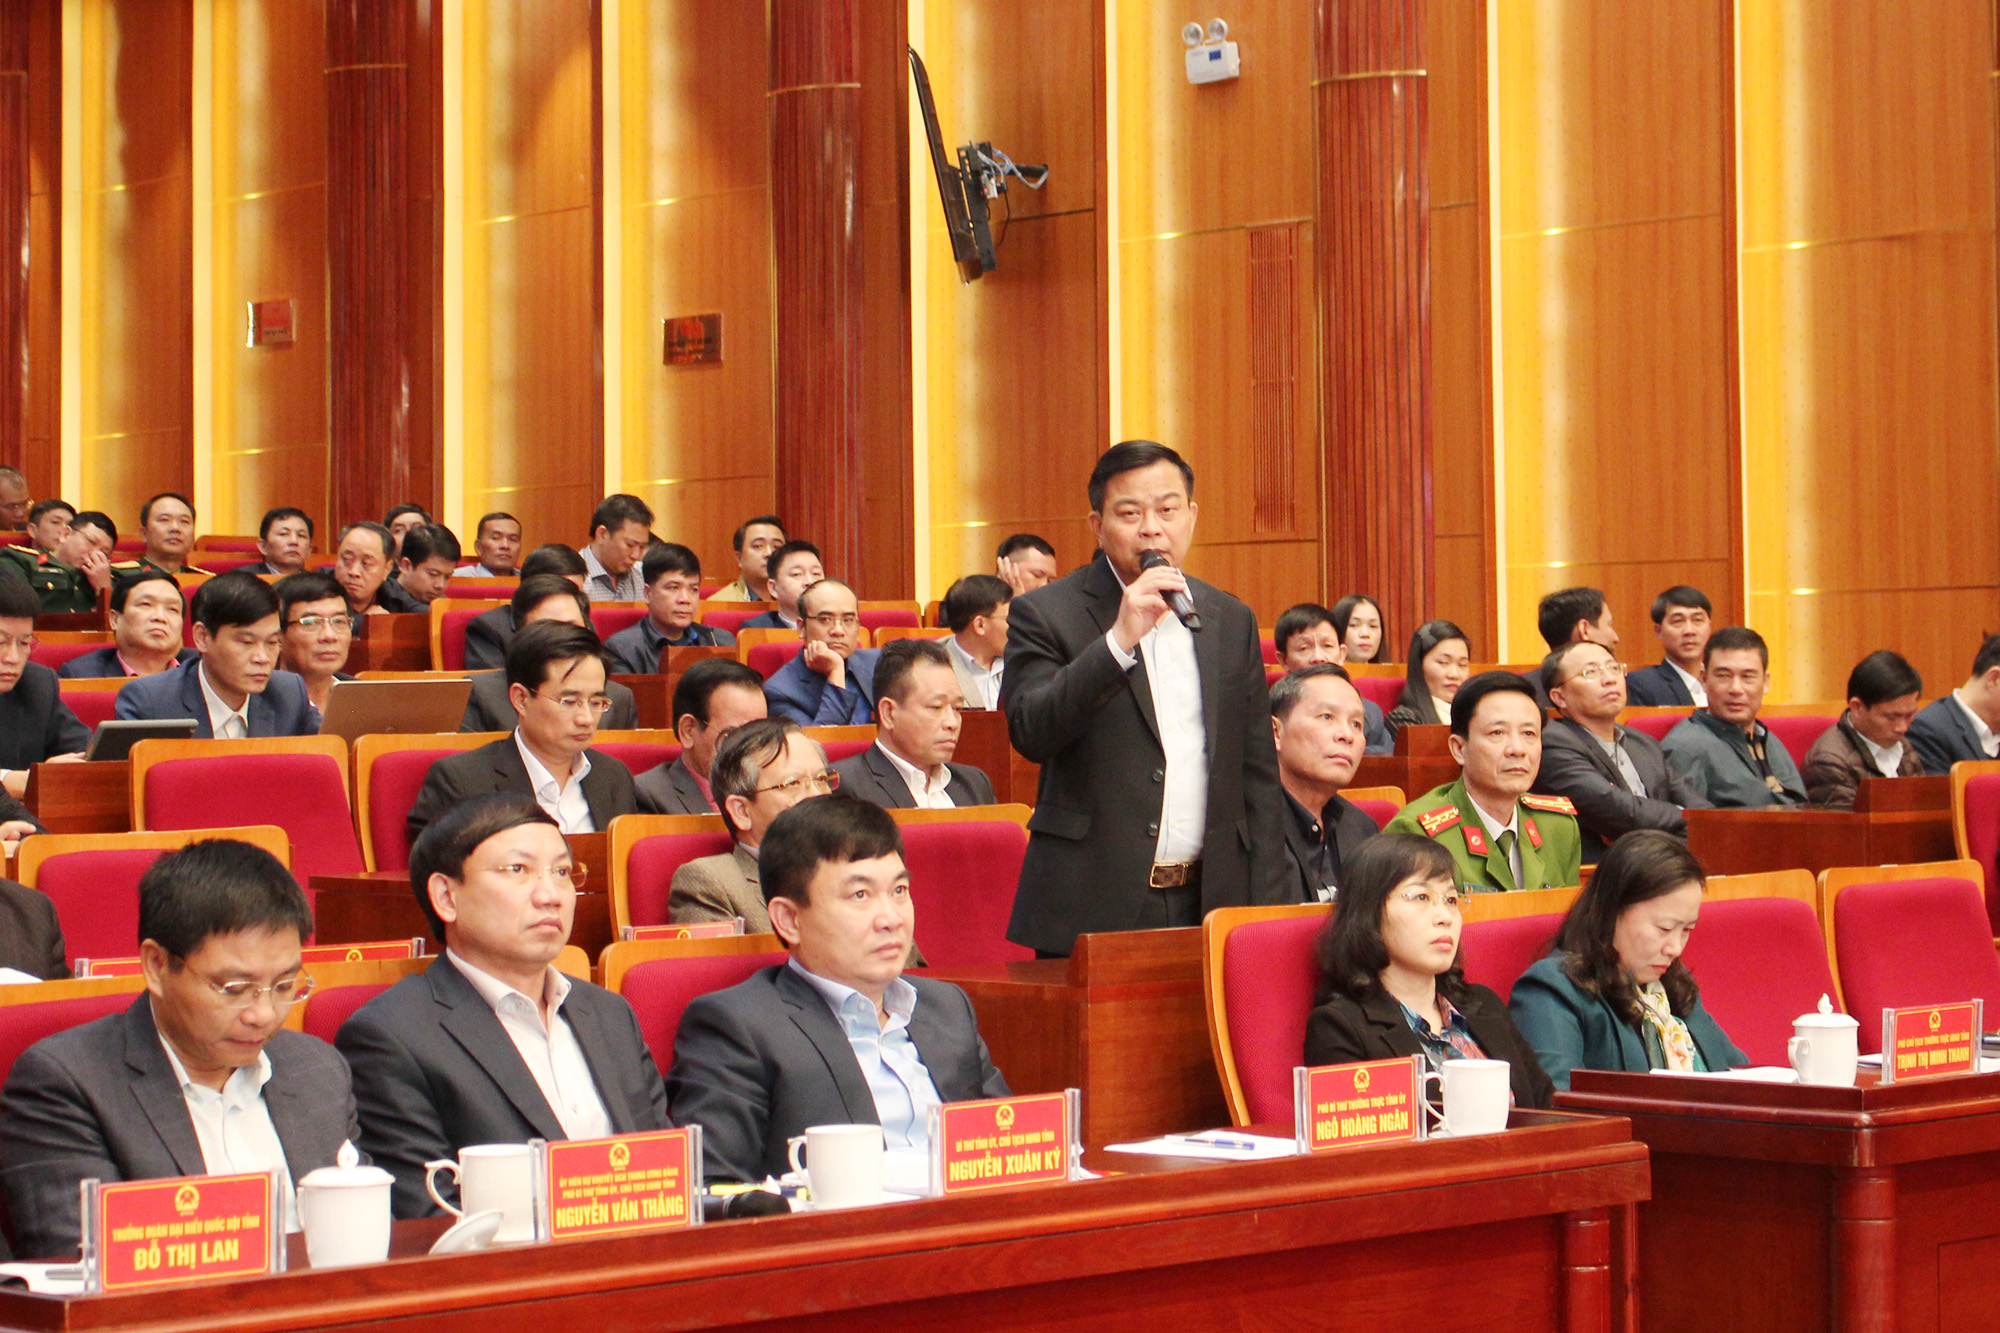 Đồng chí Trấn Đức Lâm, Bí thư Thành ủy Hạ Long, trao đổi tại hội nghị.